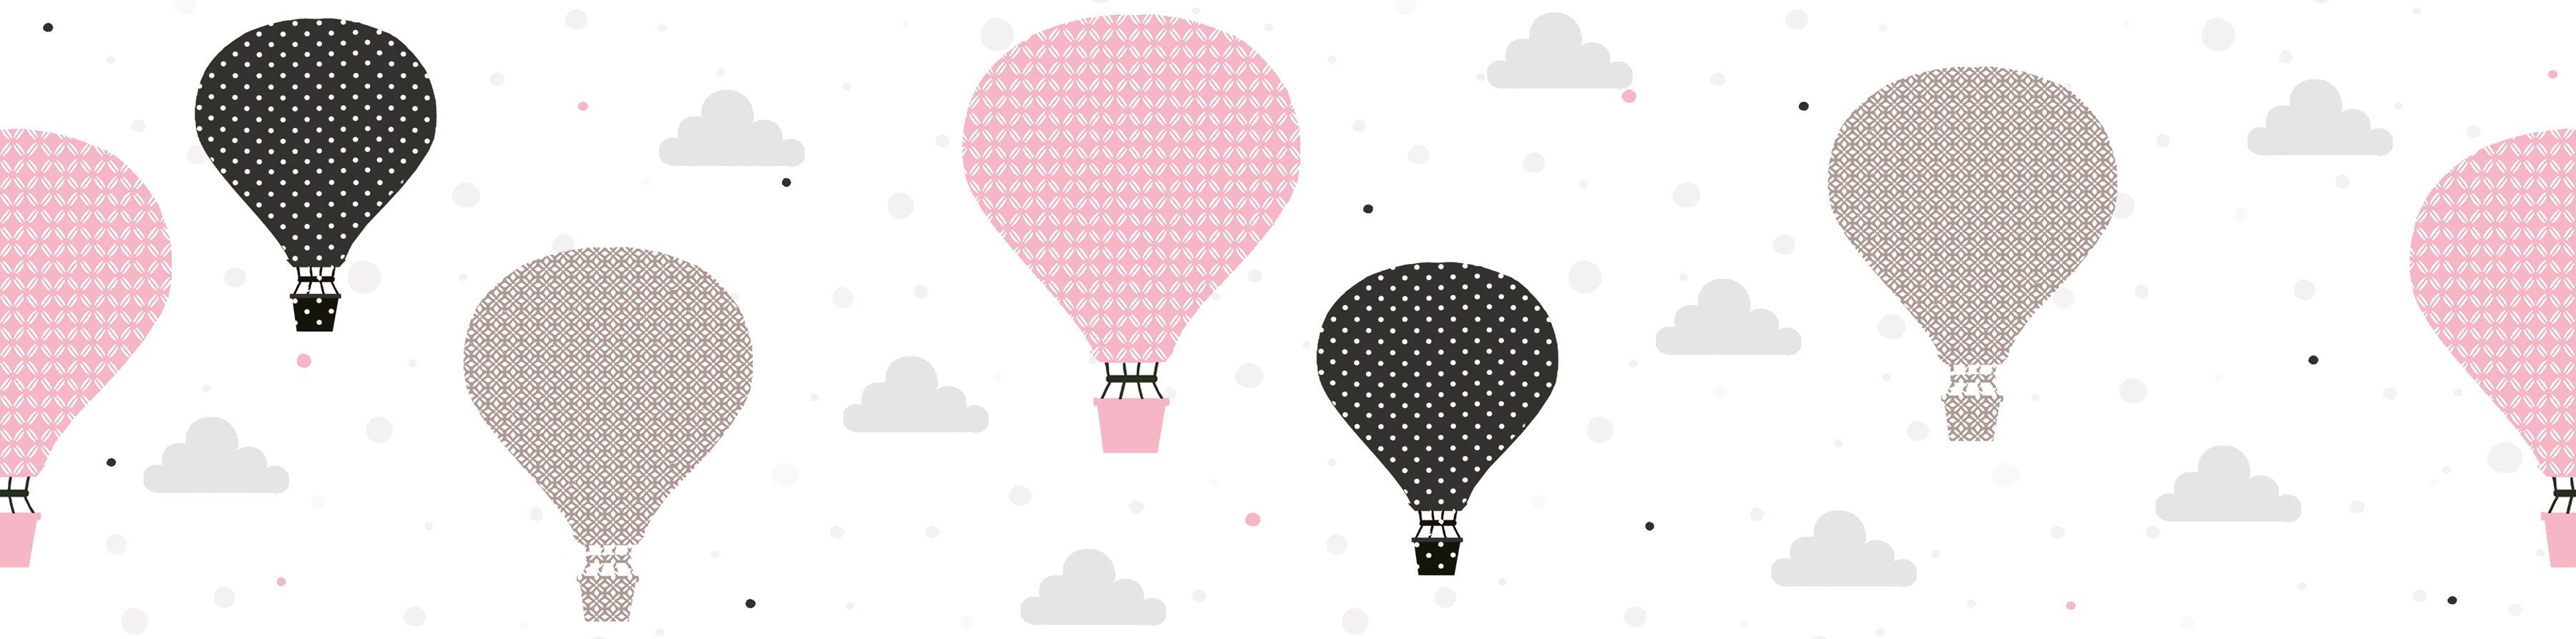 A.S. Création Bordüre Cloud Balloons, glatt, Heißluftballon Bordüre Tapete Kinderzimmer Rosa Grau Schwarz